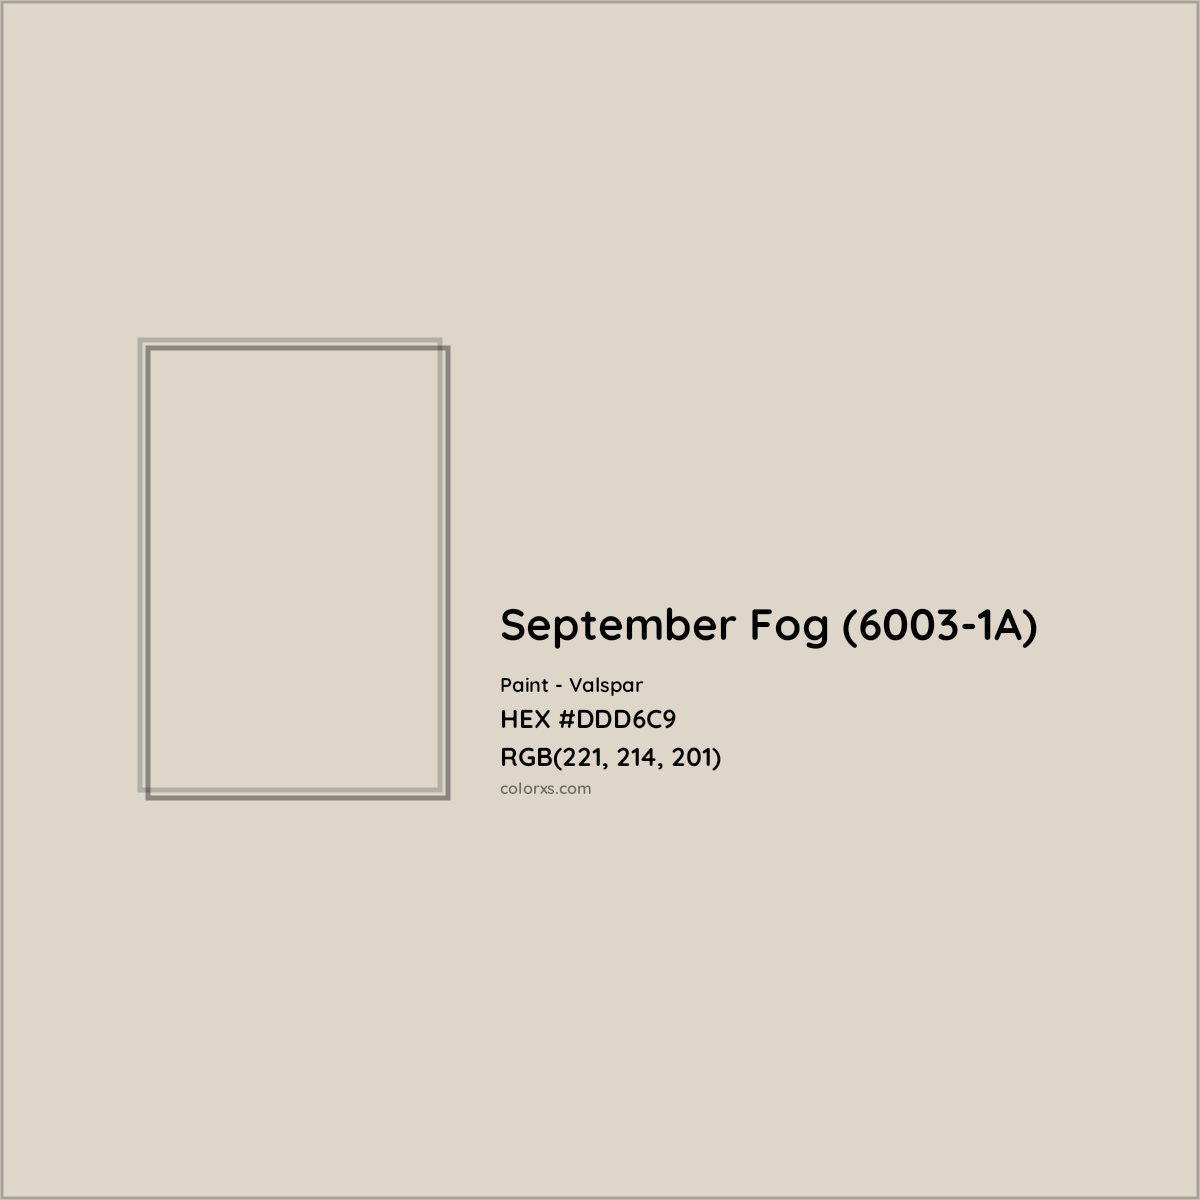 HEX #DDD6C9 September Fog (6003-1A) Paint Valspar - Color Code